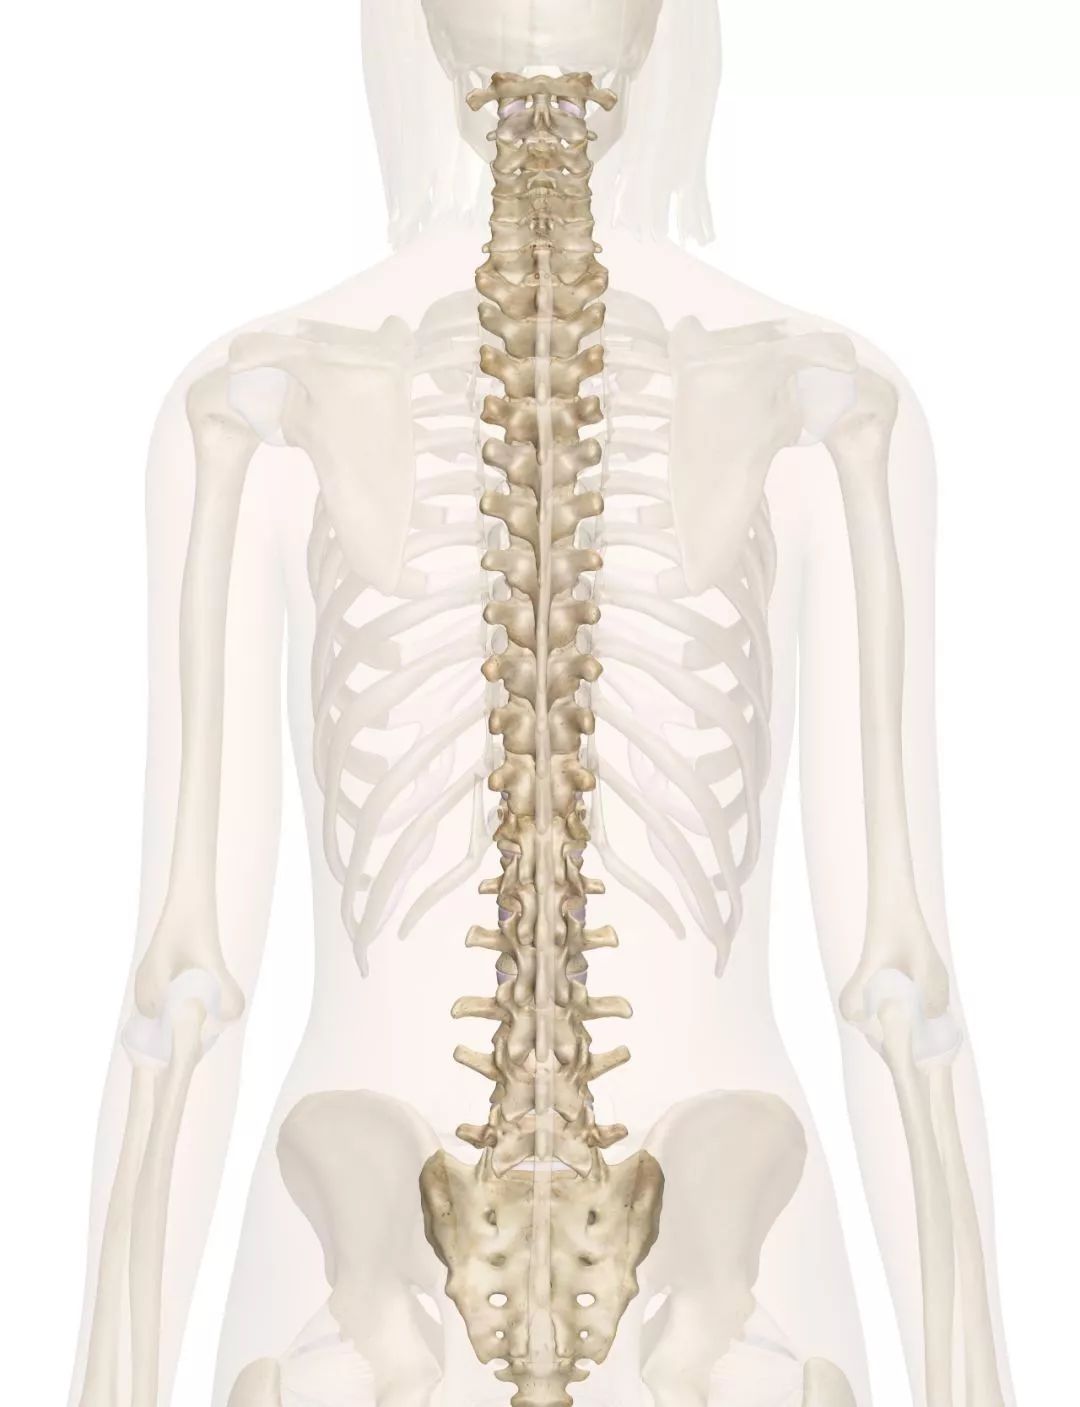 正常人的背脊骨图片图片